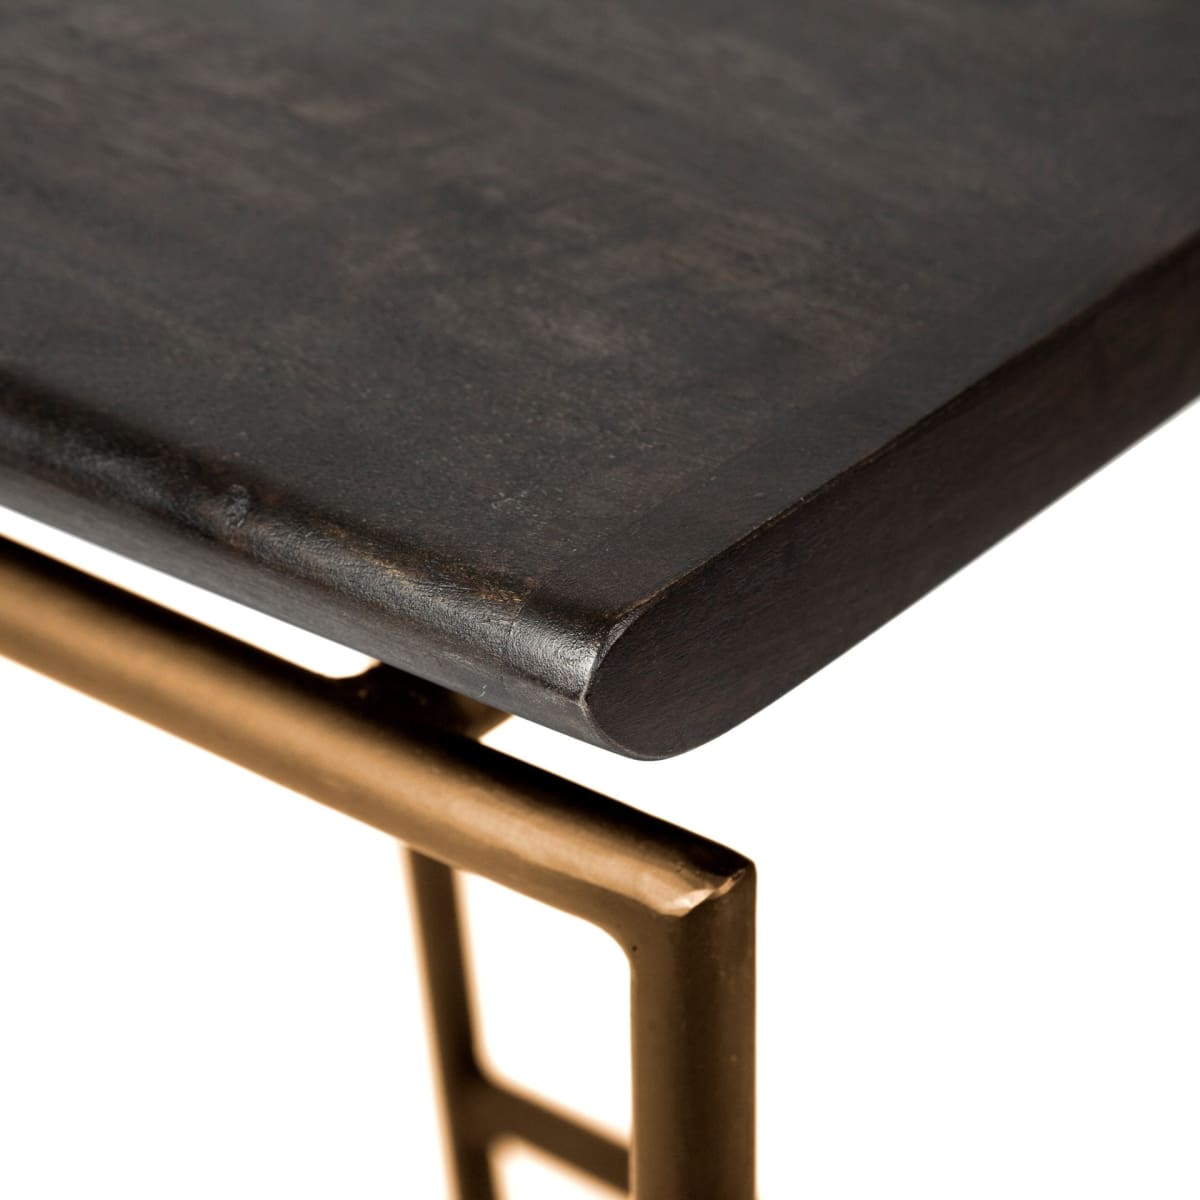 Givens Bar Counter Stool Brown Wood | Gold Metal | Bar - bar-stools